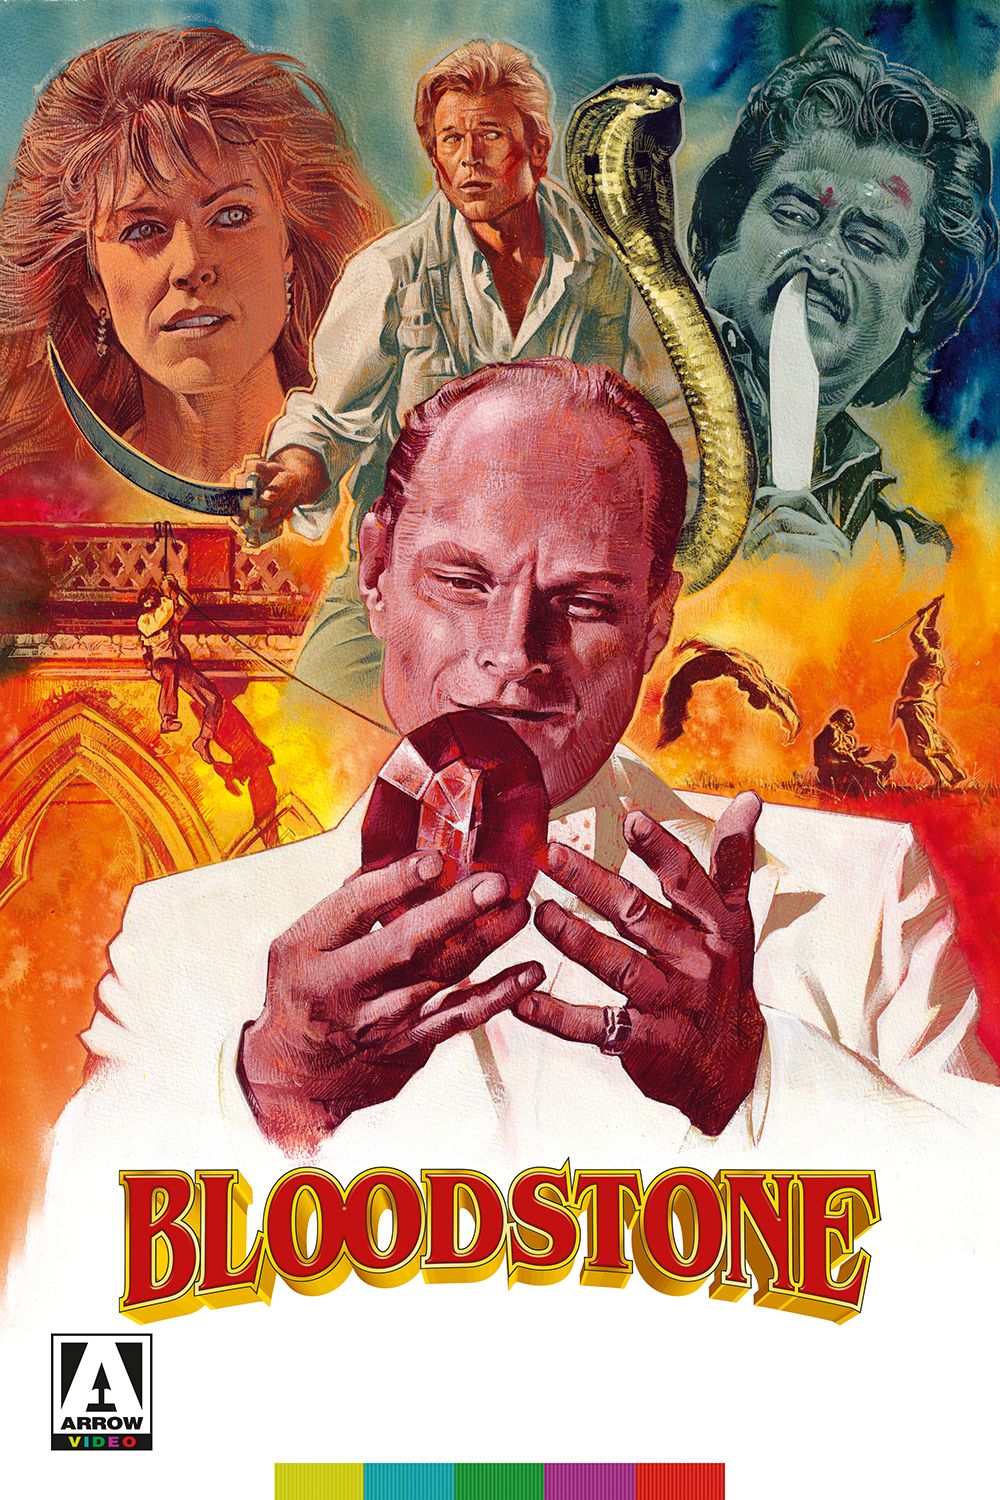 Bloodstone on Arrow Video Channel - Streaming July 2020